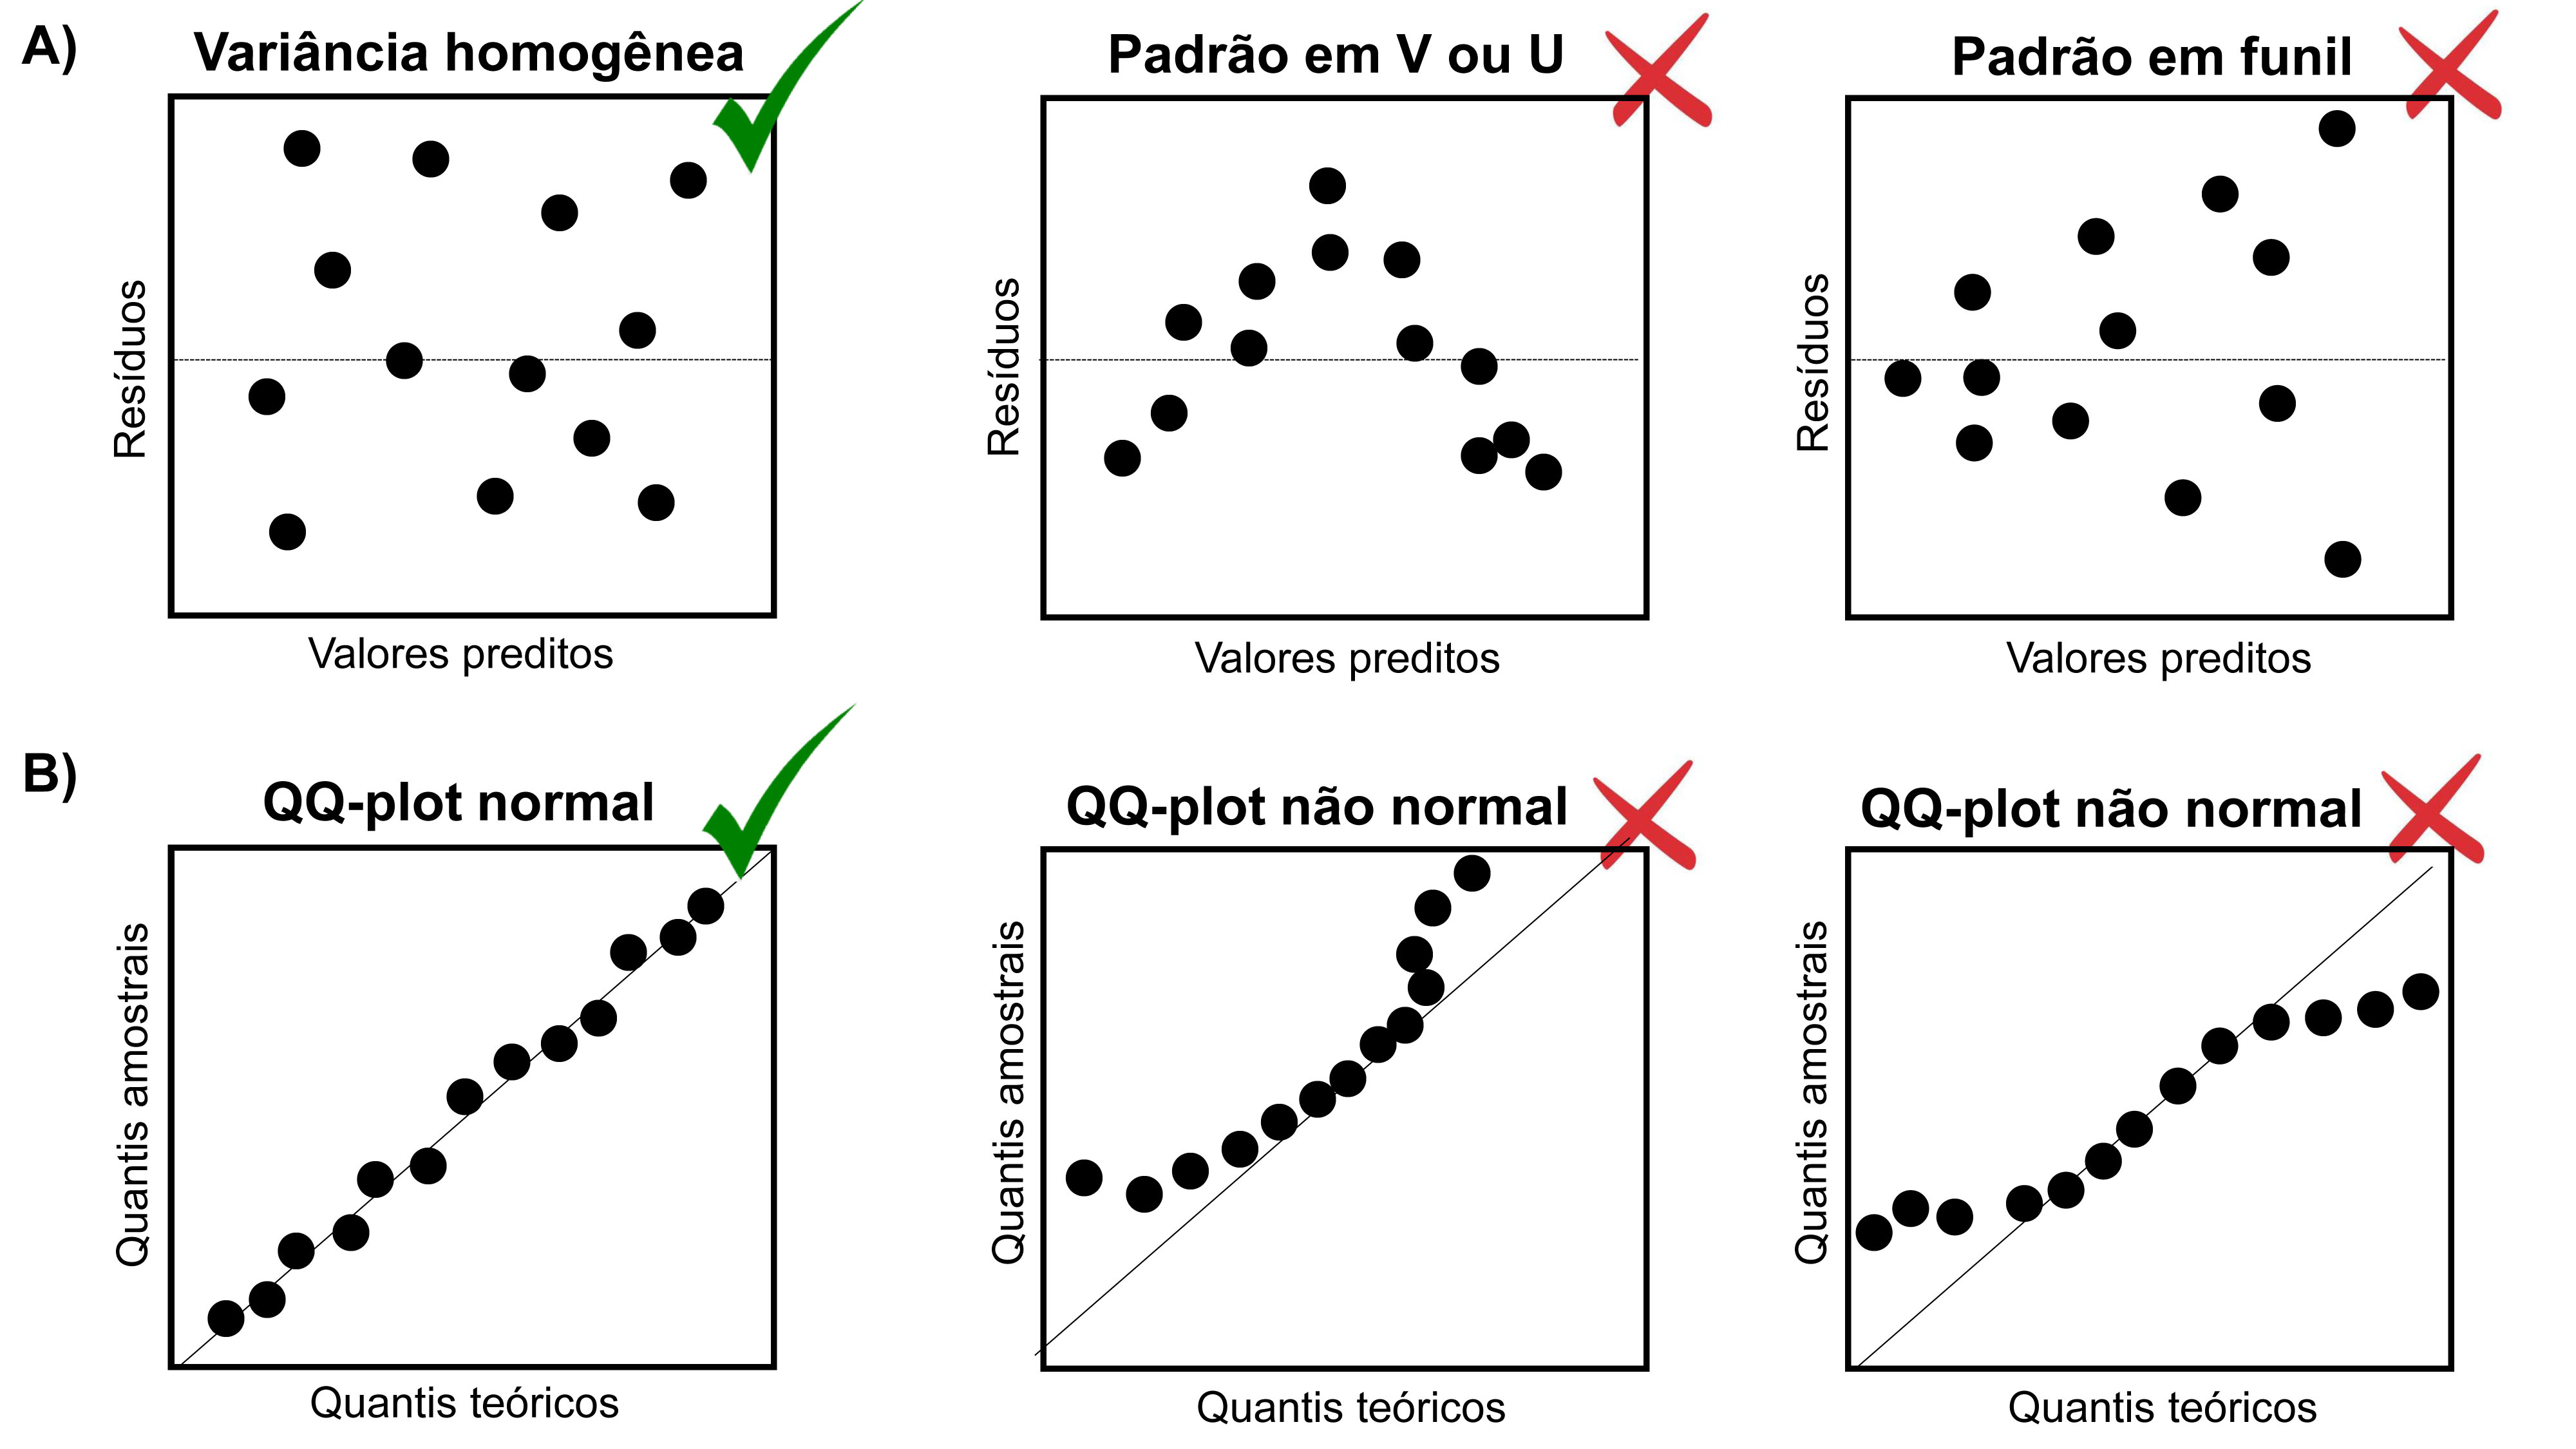 Inspeção gráfica da homogeneidade da variância (A) e normalidade dos resíduos (B). Os símbolos verdes indicam que os gráficos em que os resíduos apresentam distribuição homogênea e normal, enquanto os símbolos vermelhos indicam os gráficos em que os resíduos violam as premissas do teste.